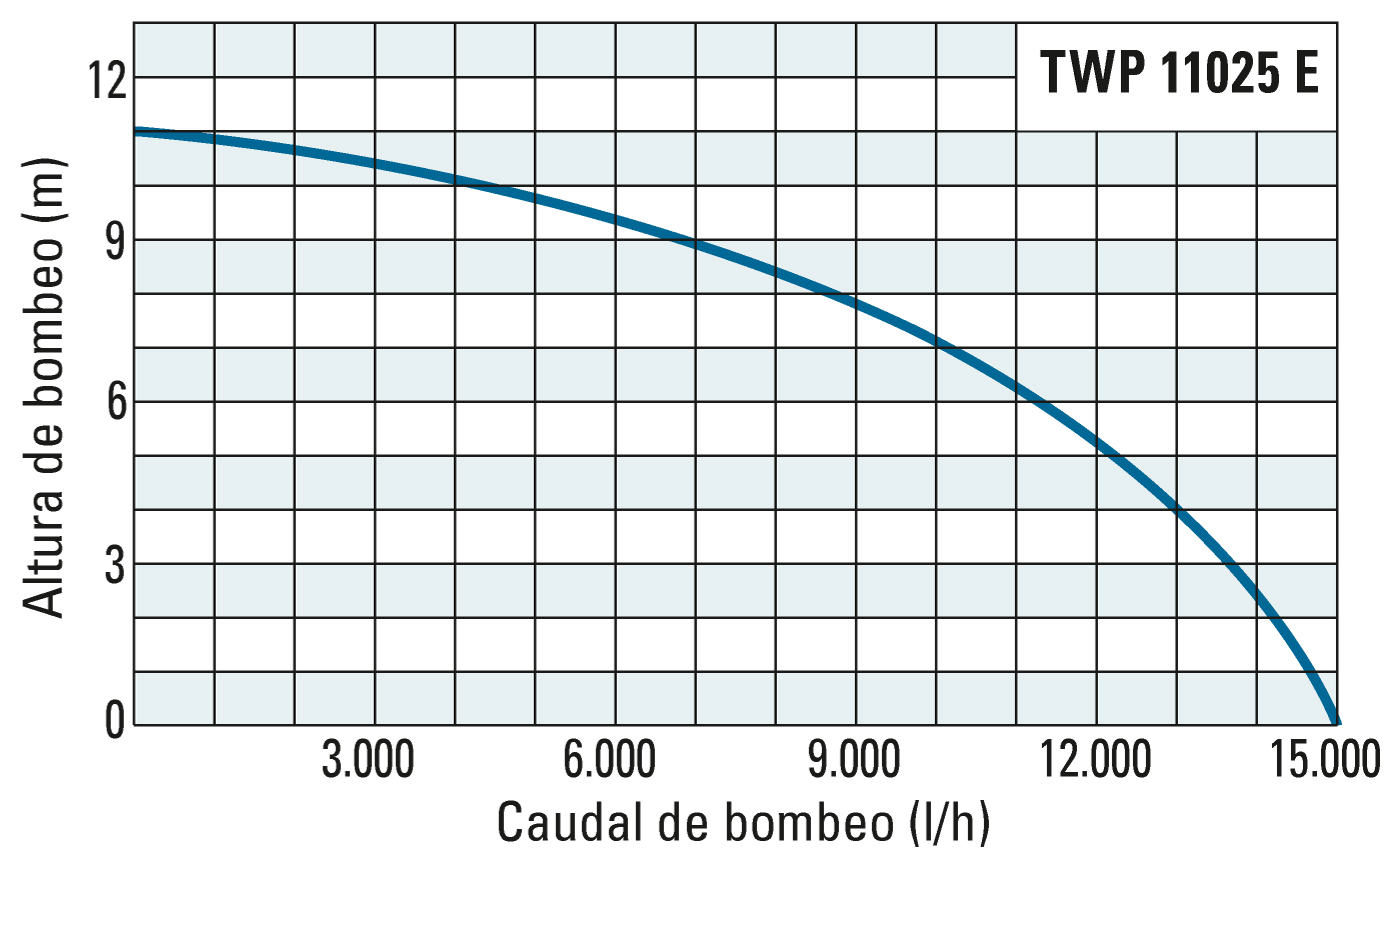 Altura de bombeo y caudal de bombeo de la TWP 11025 E